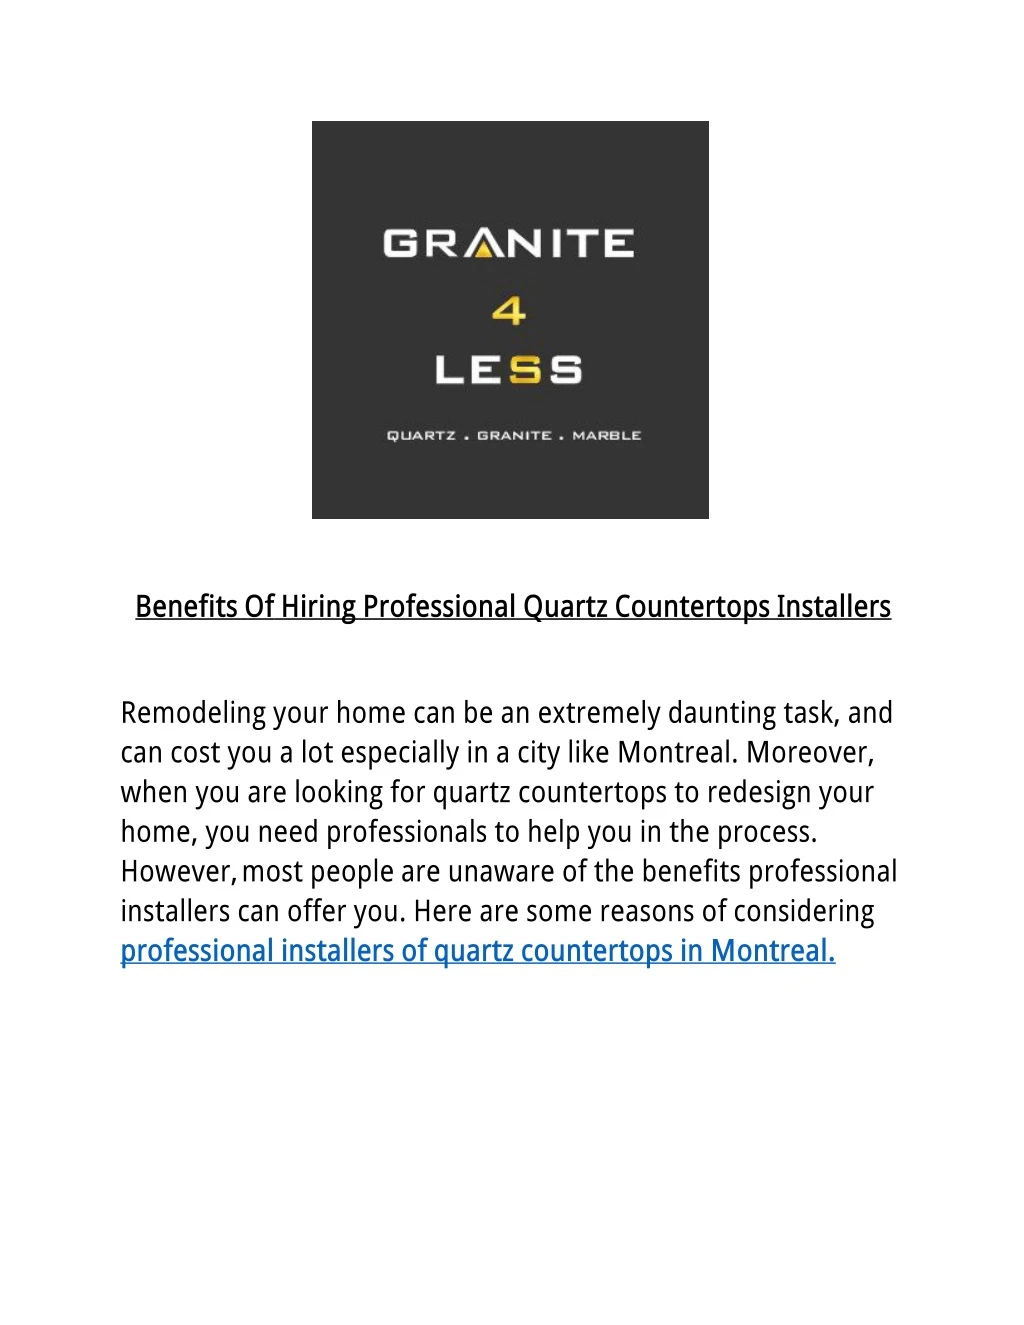 benefits of hiring professional quartz